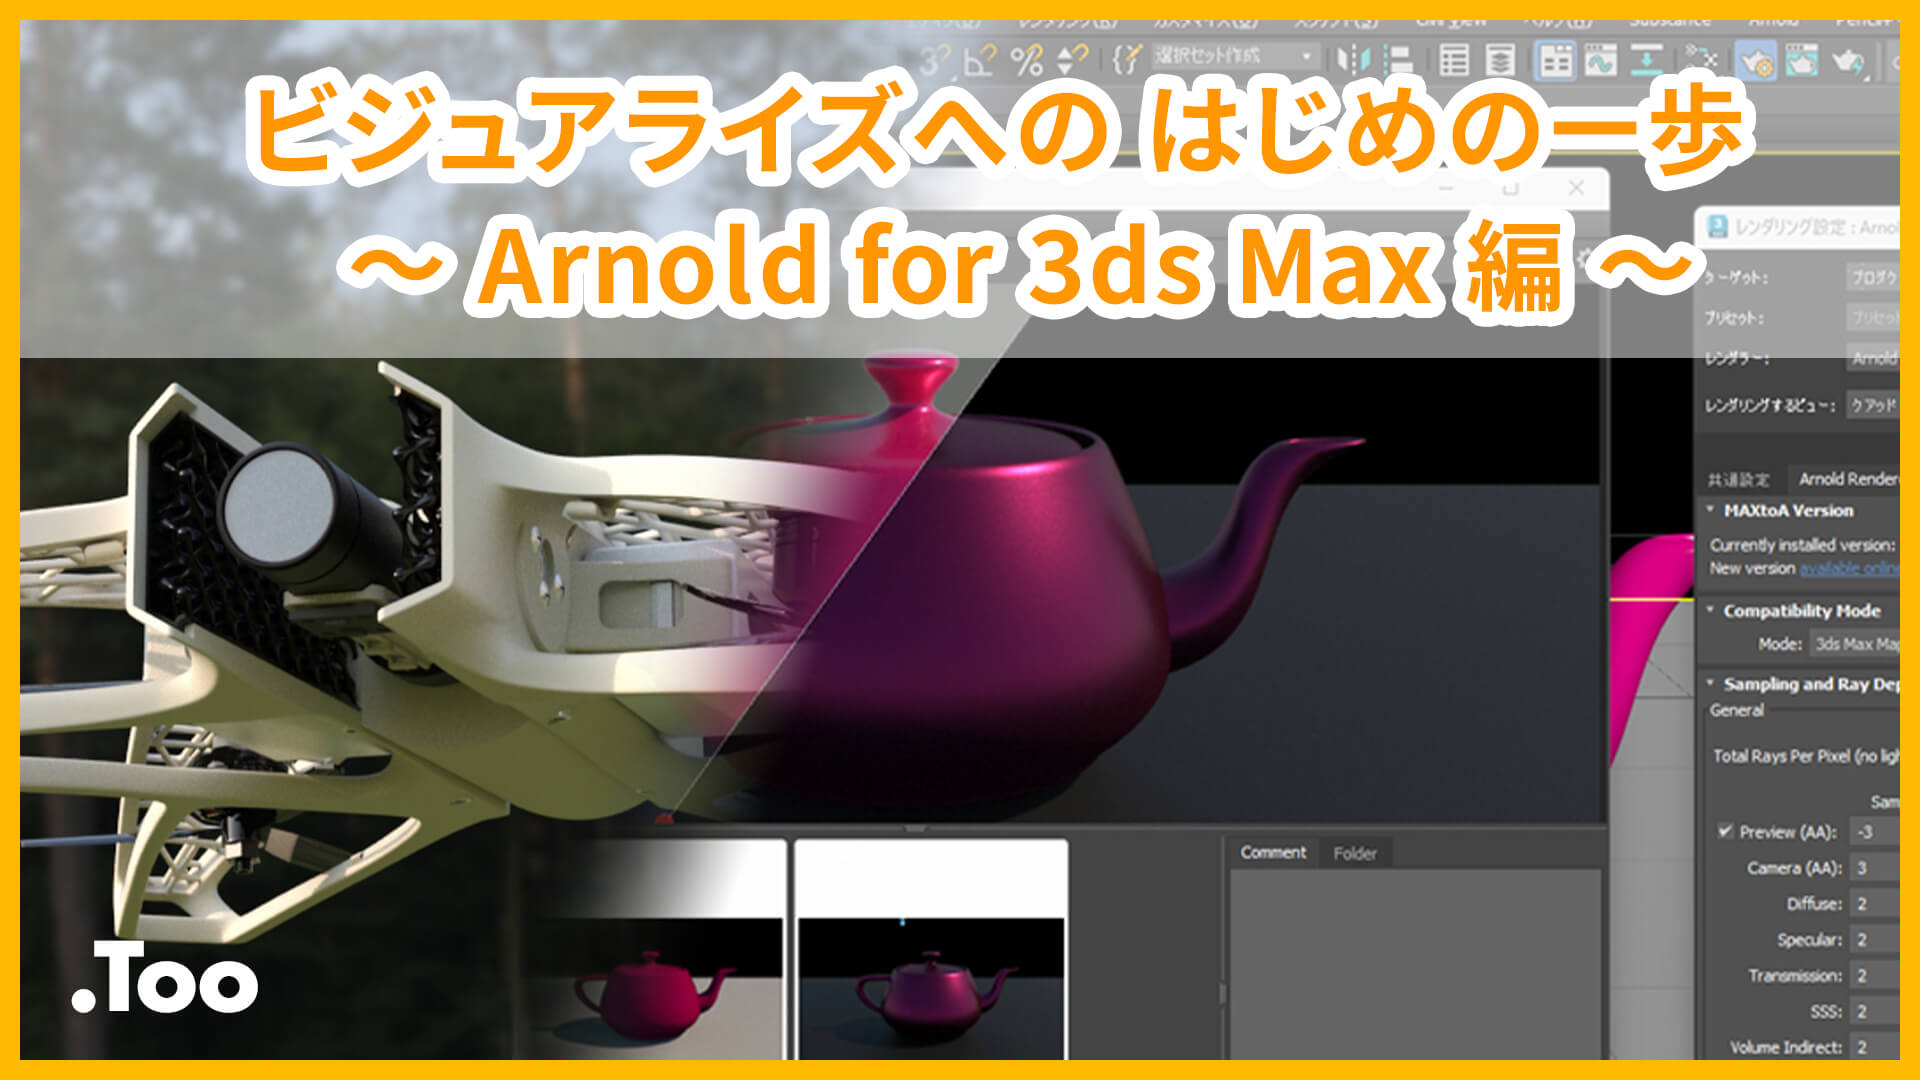 ビジュアライズへの はじめの一歩 〜Arnold for 3ds Max編〜